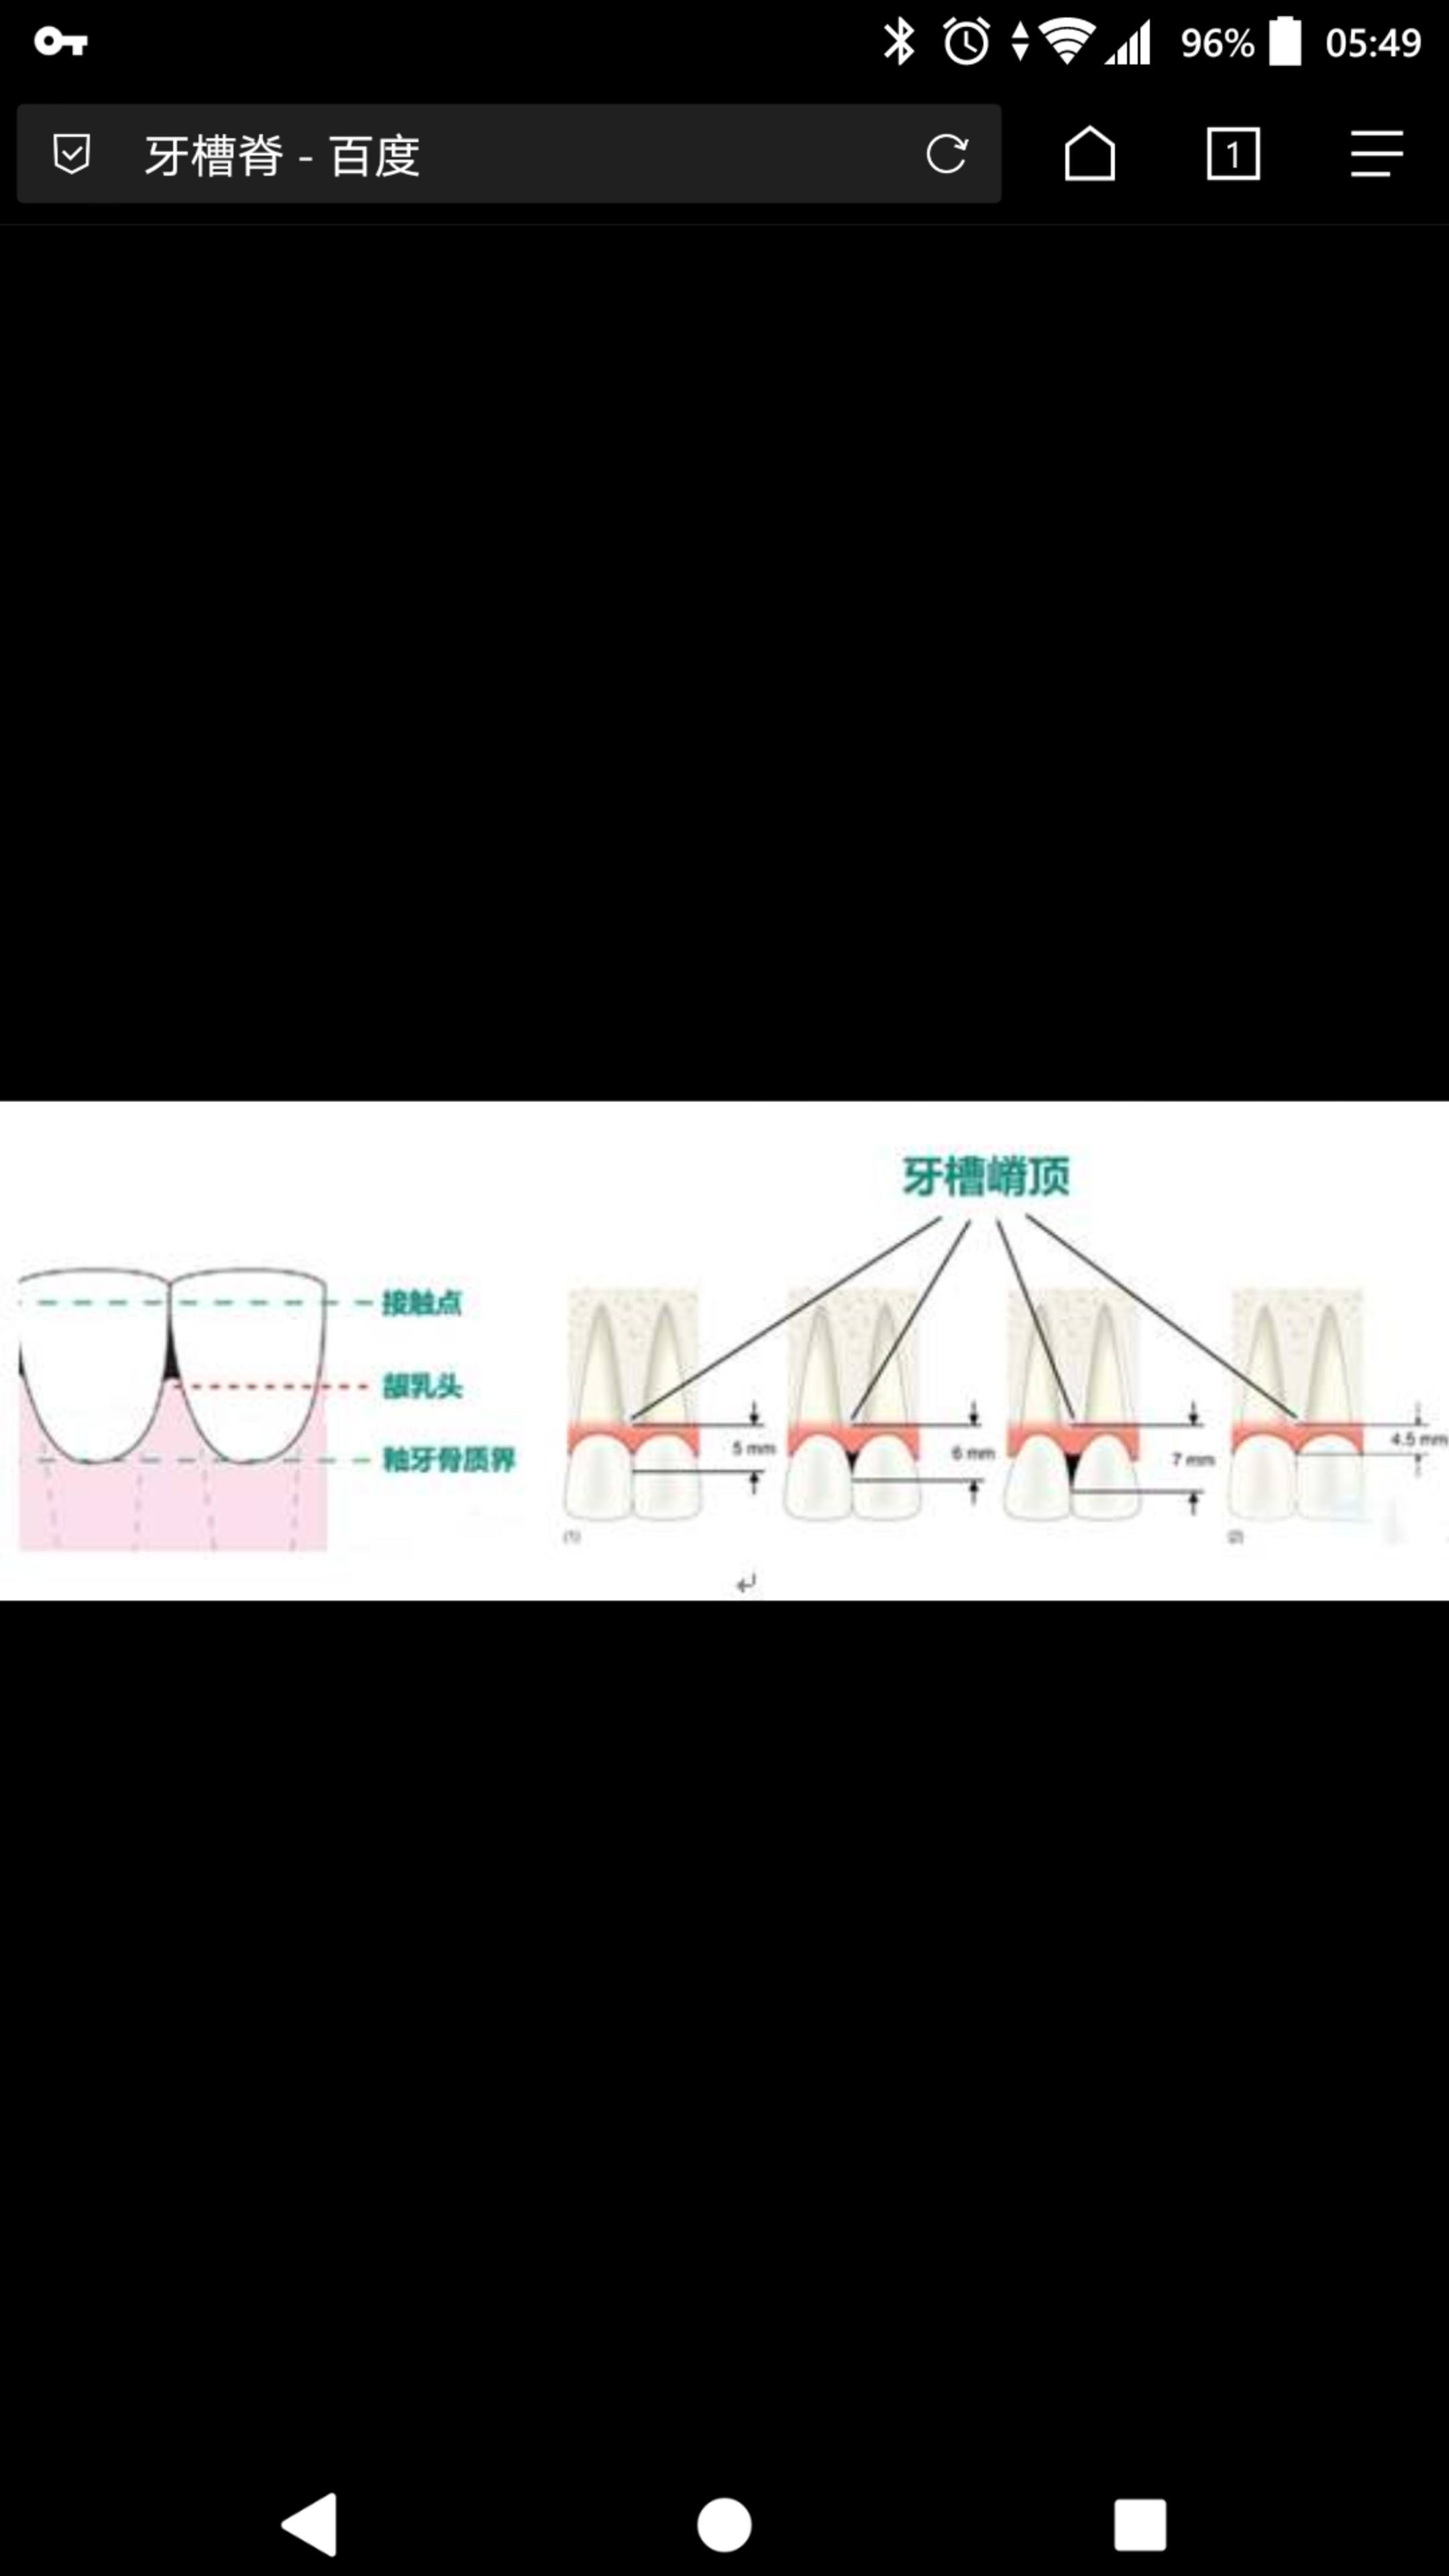 牙槽嵴名词解释图片